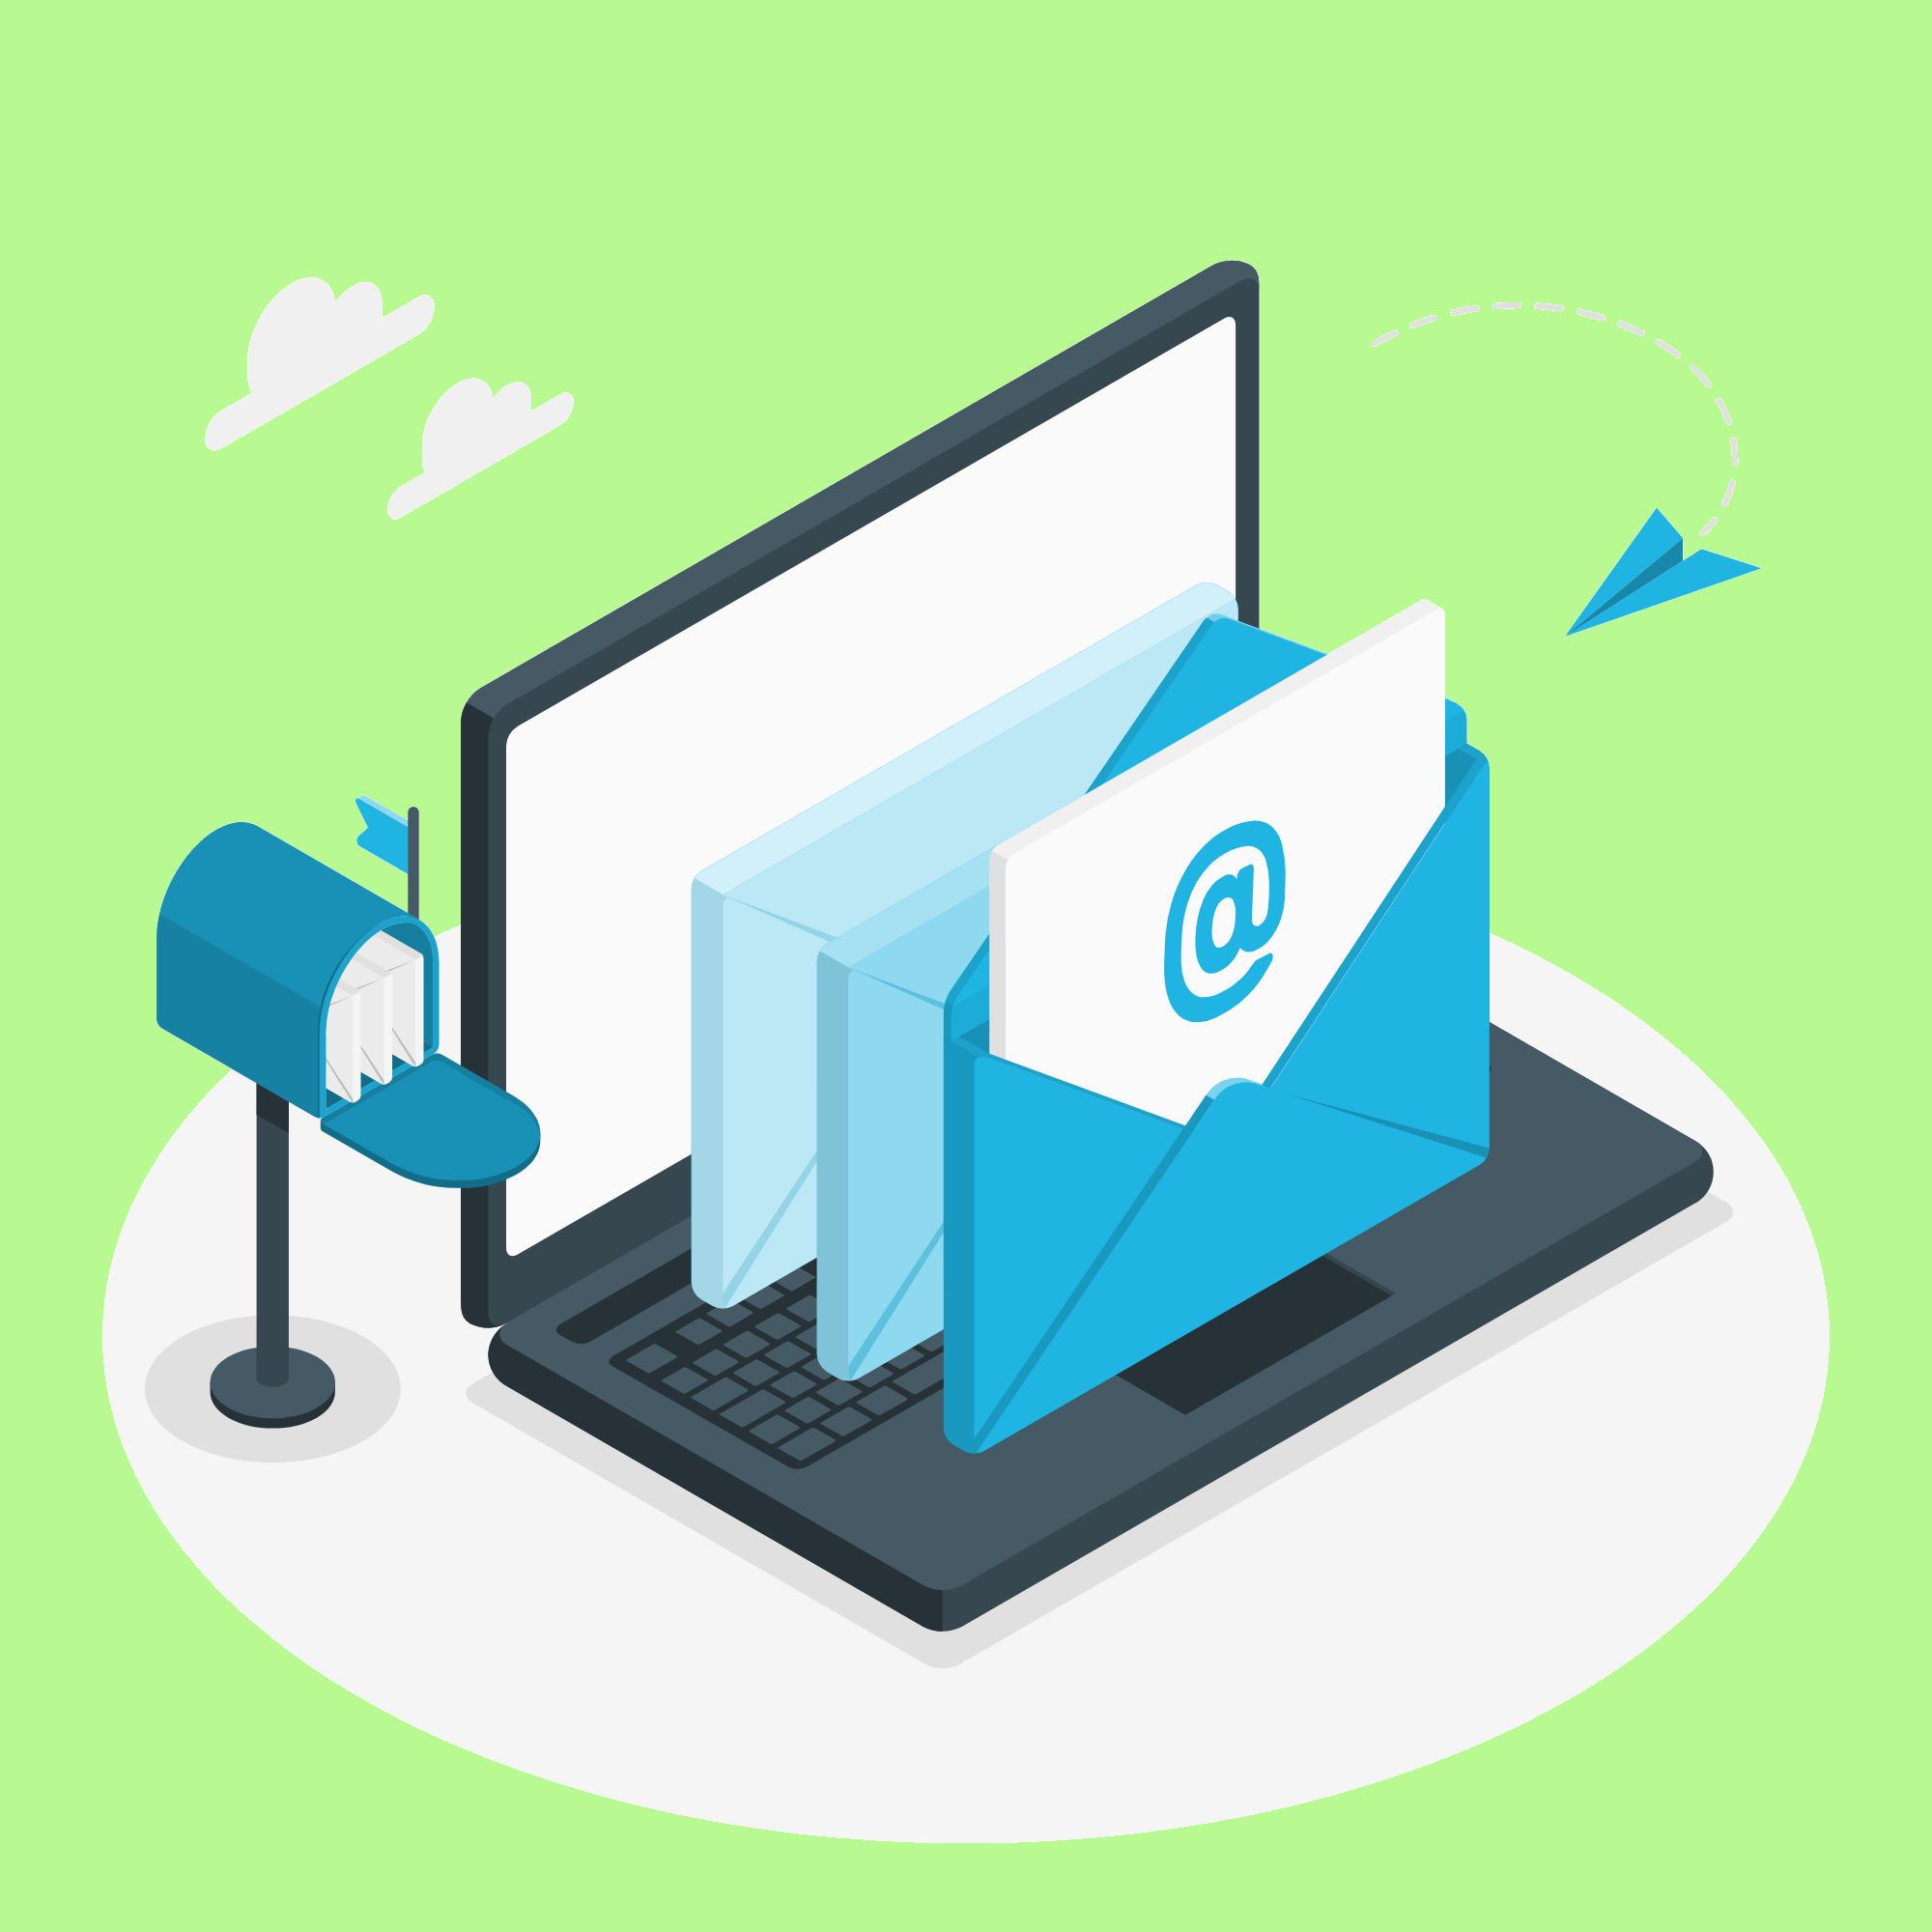 Configurar envíos por email desde una cuenta de Gmail u Outlook